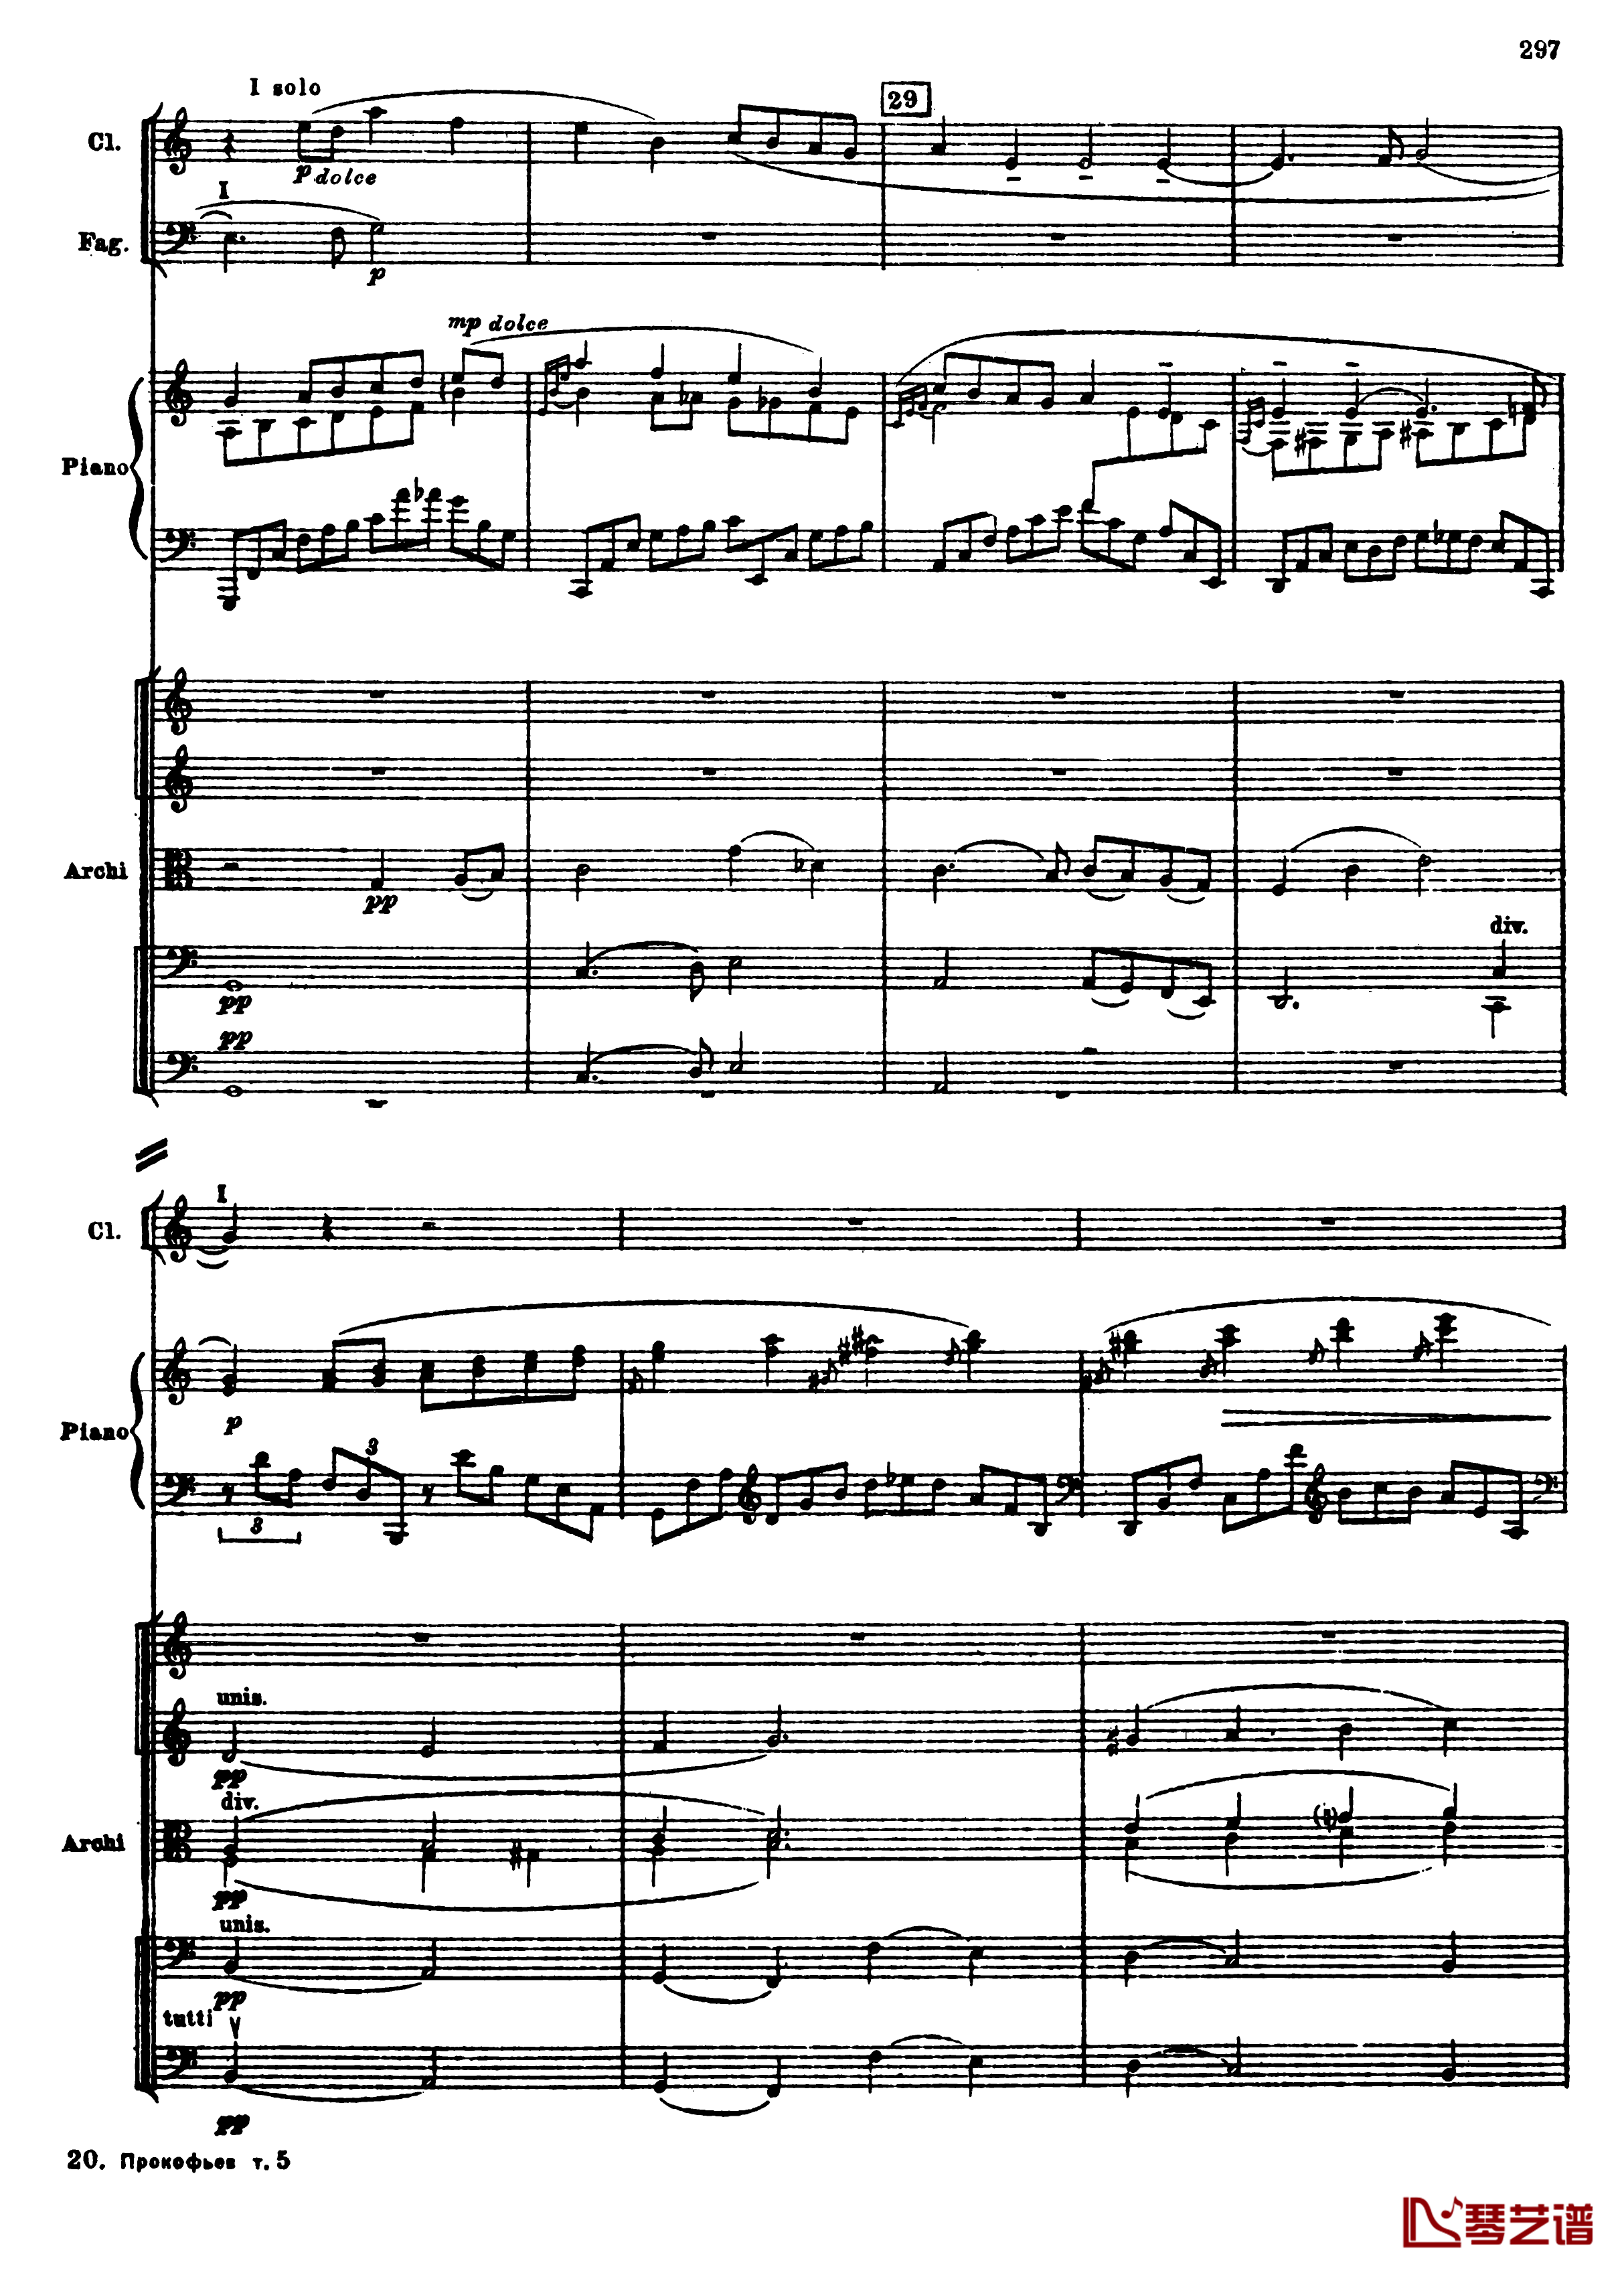 普罗科菲耶夫第三钢琴协奏曲钢琴谱-总谱-普罗科非耶夫29